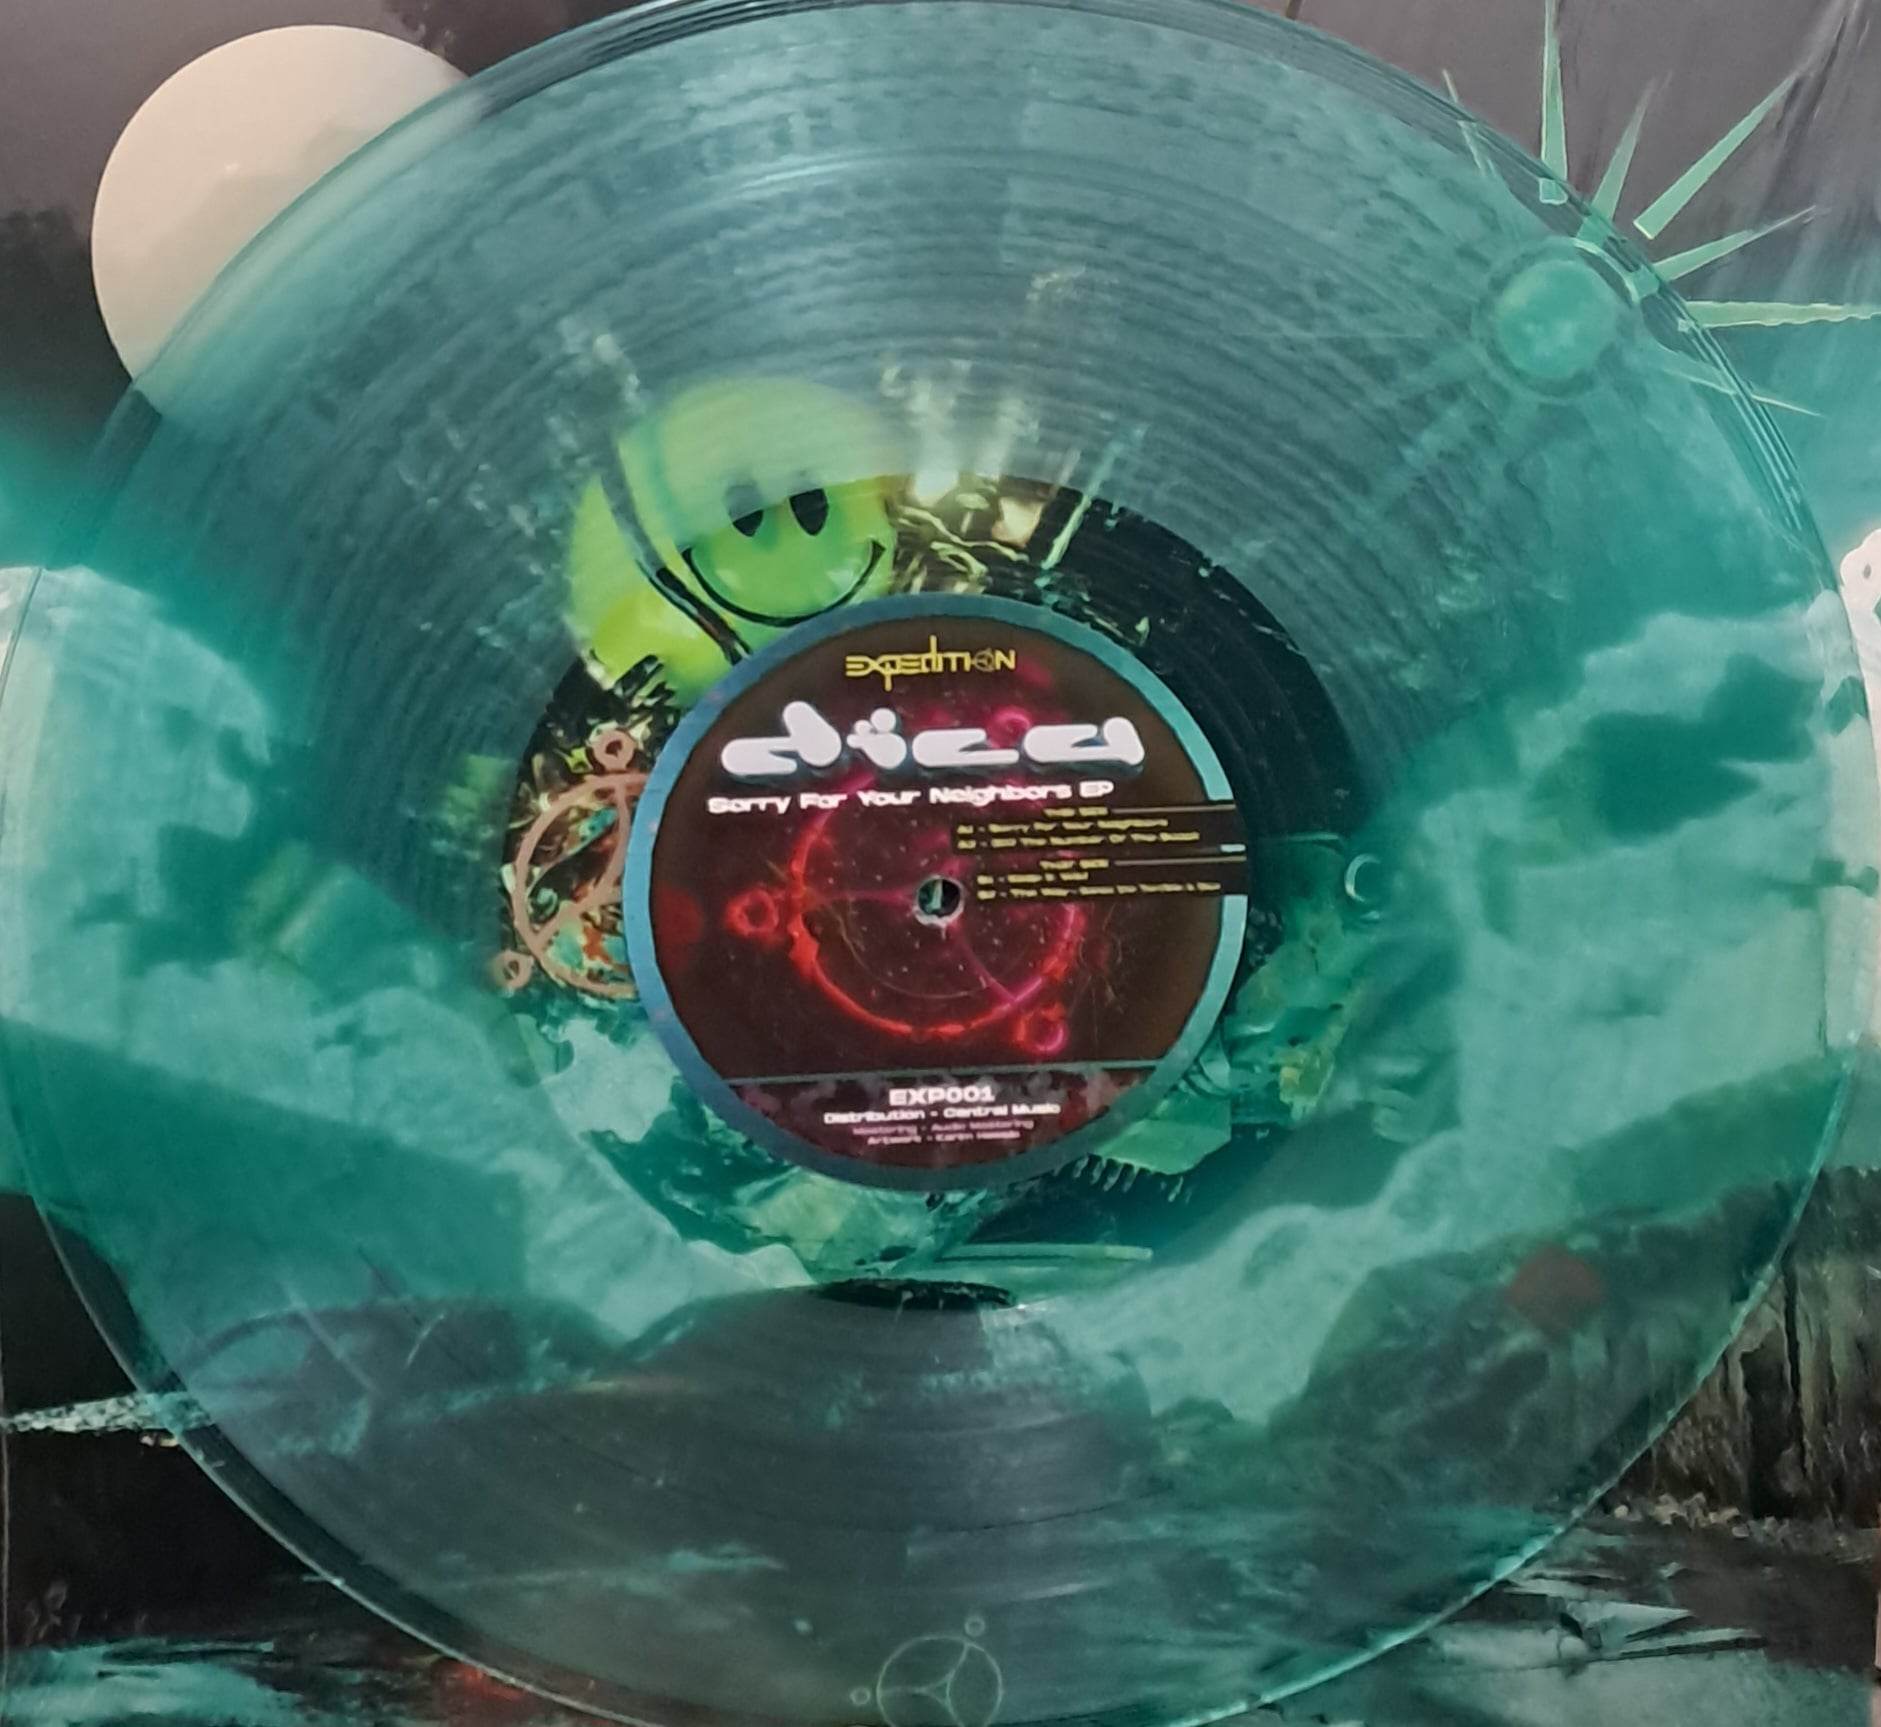 Expedition 01 ( Vert transparent) (toute dernière copie en stock) - vinyle acidcore